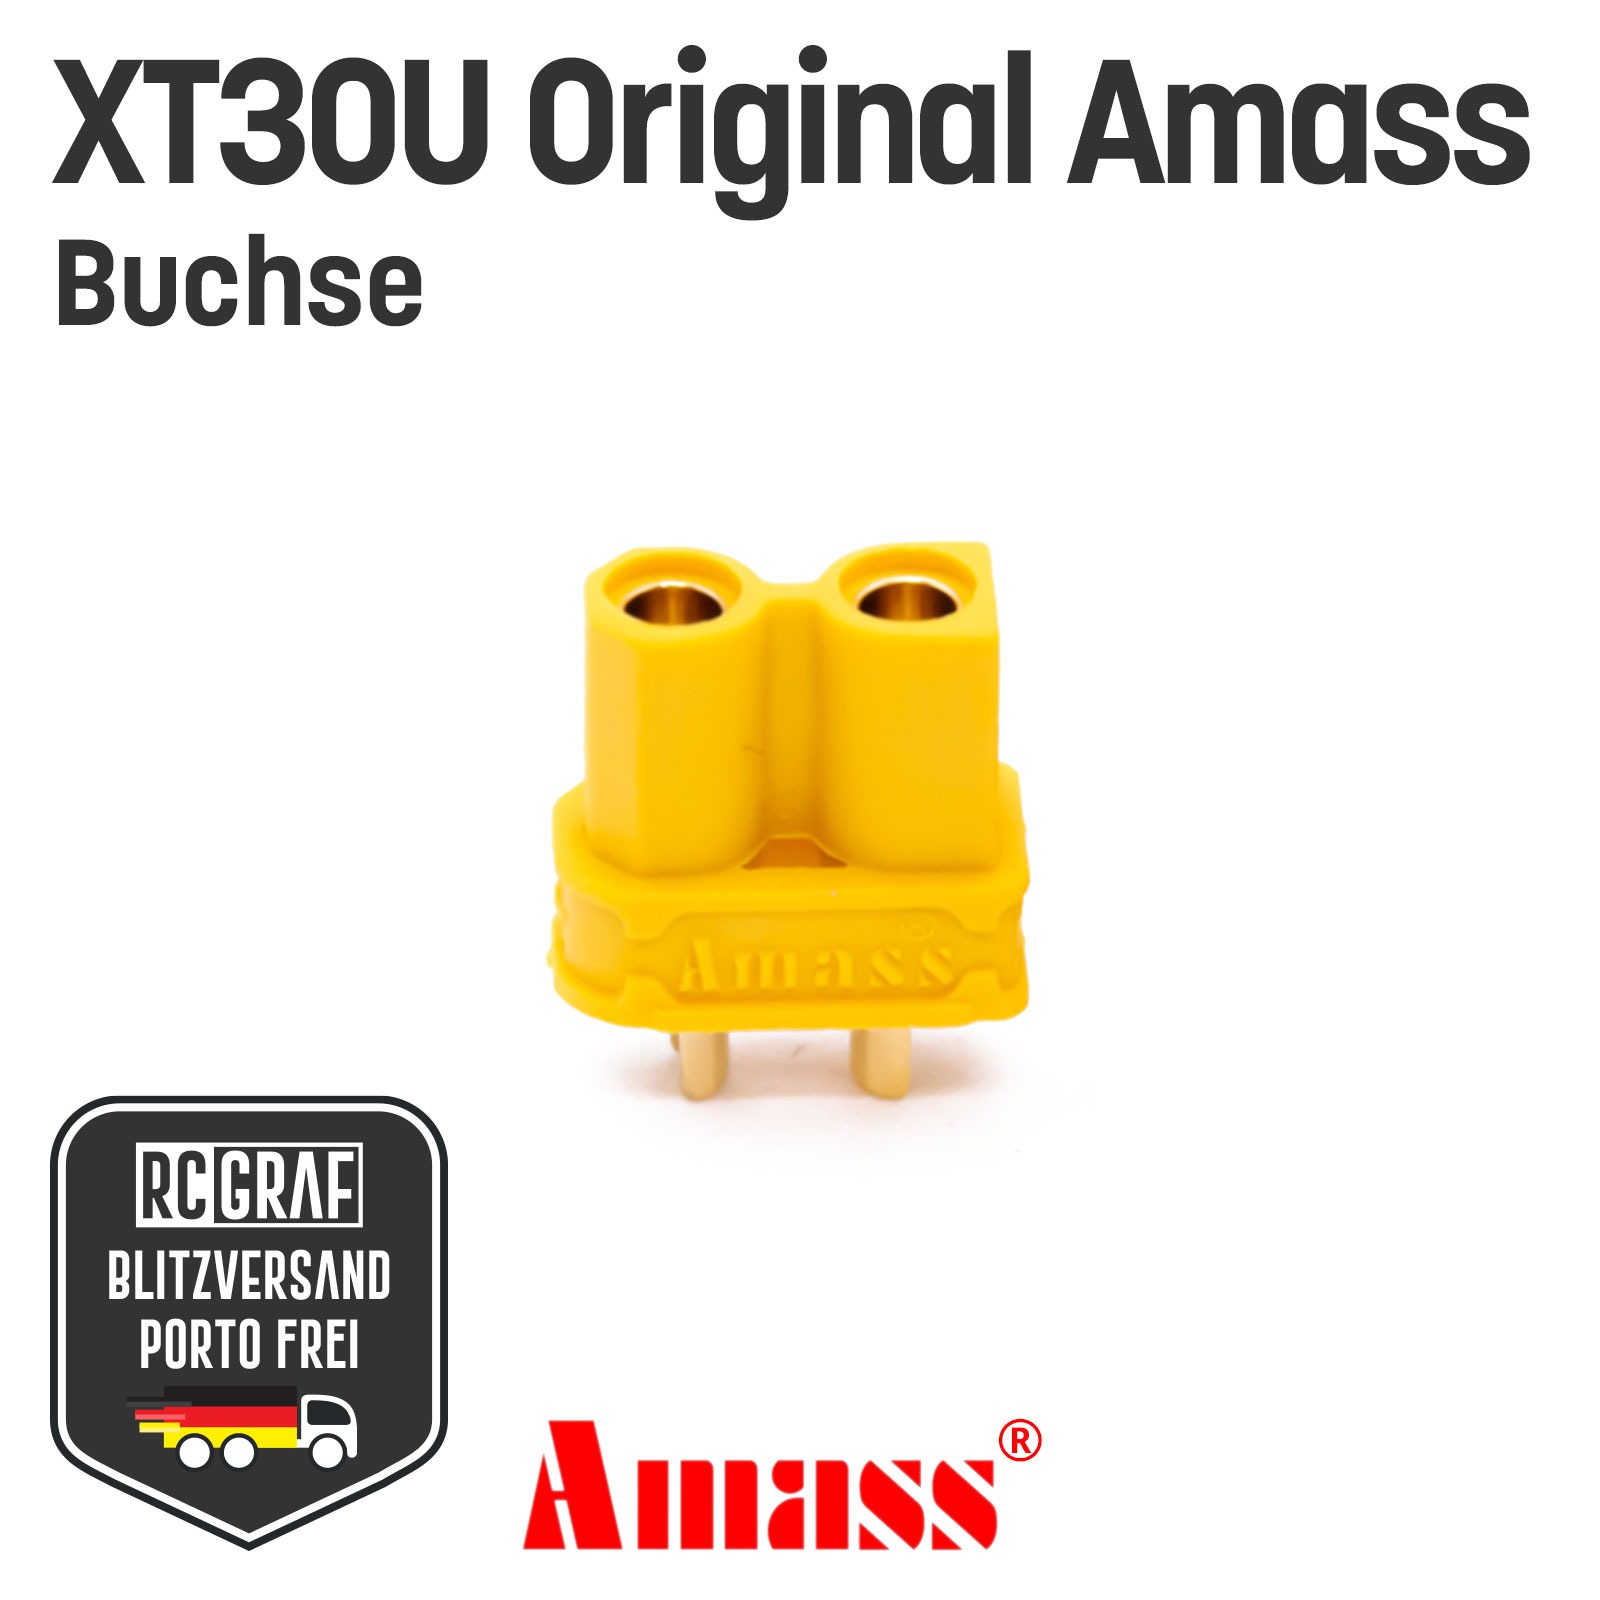 5 Buchsen XT30U Original Amass 2